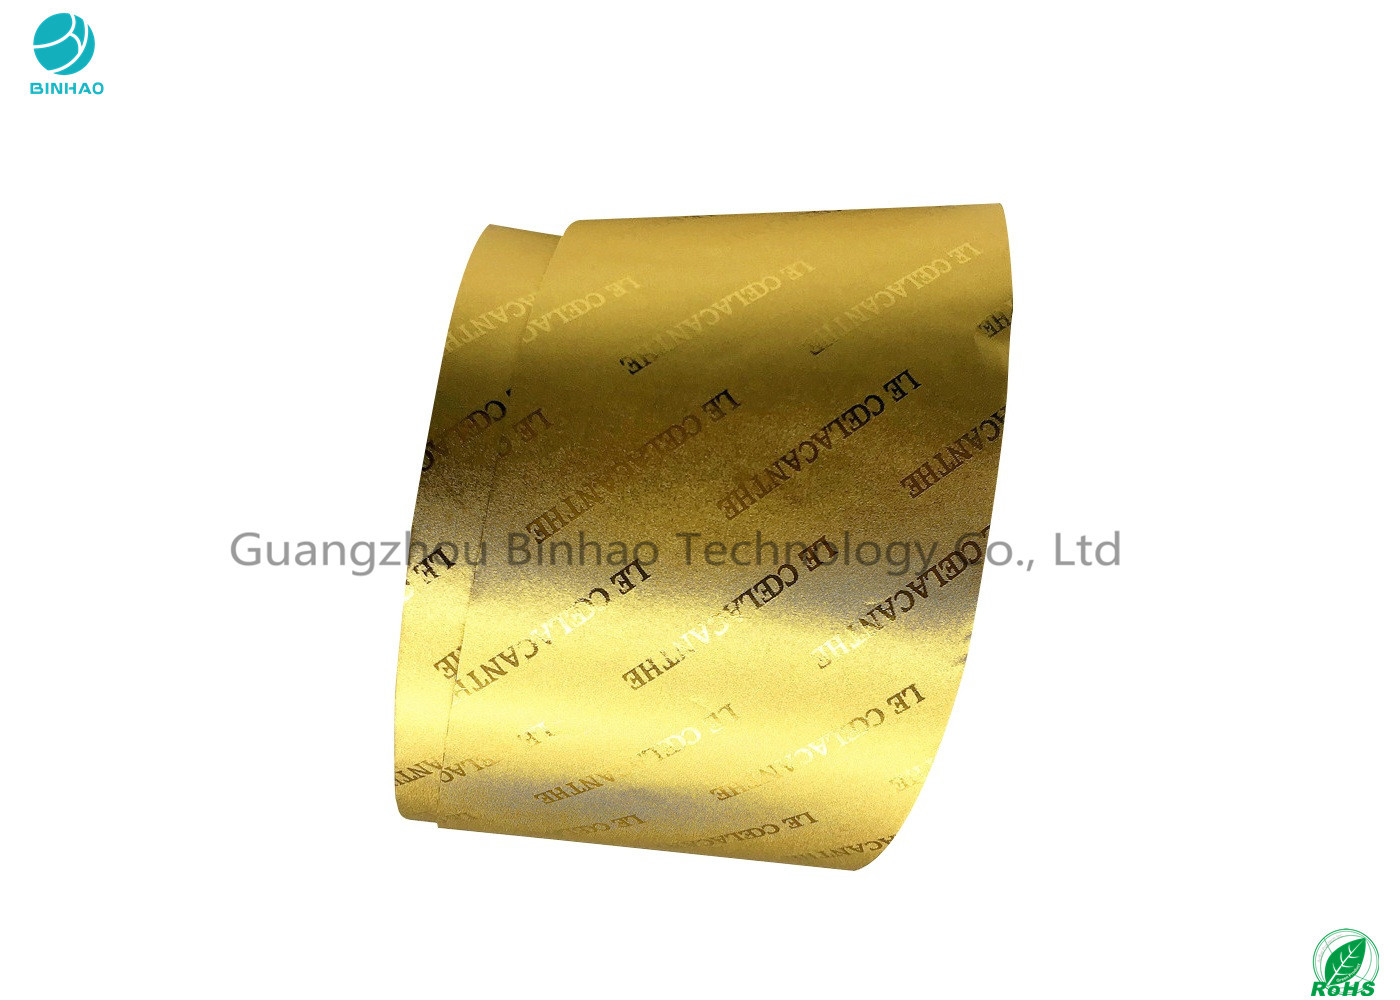 Χρυσό και ασημένιο τοποθετημένο σε στρώματα έγγραφο φύλλων αλουμινίου αλουμινίου με την αποτύπωση σε ανάγλυφο του λογότυπου